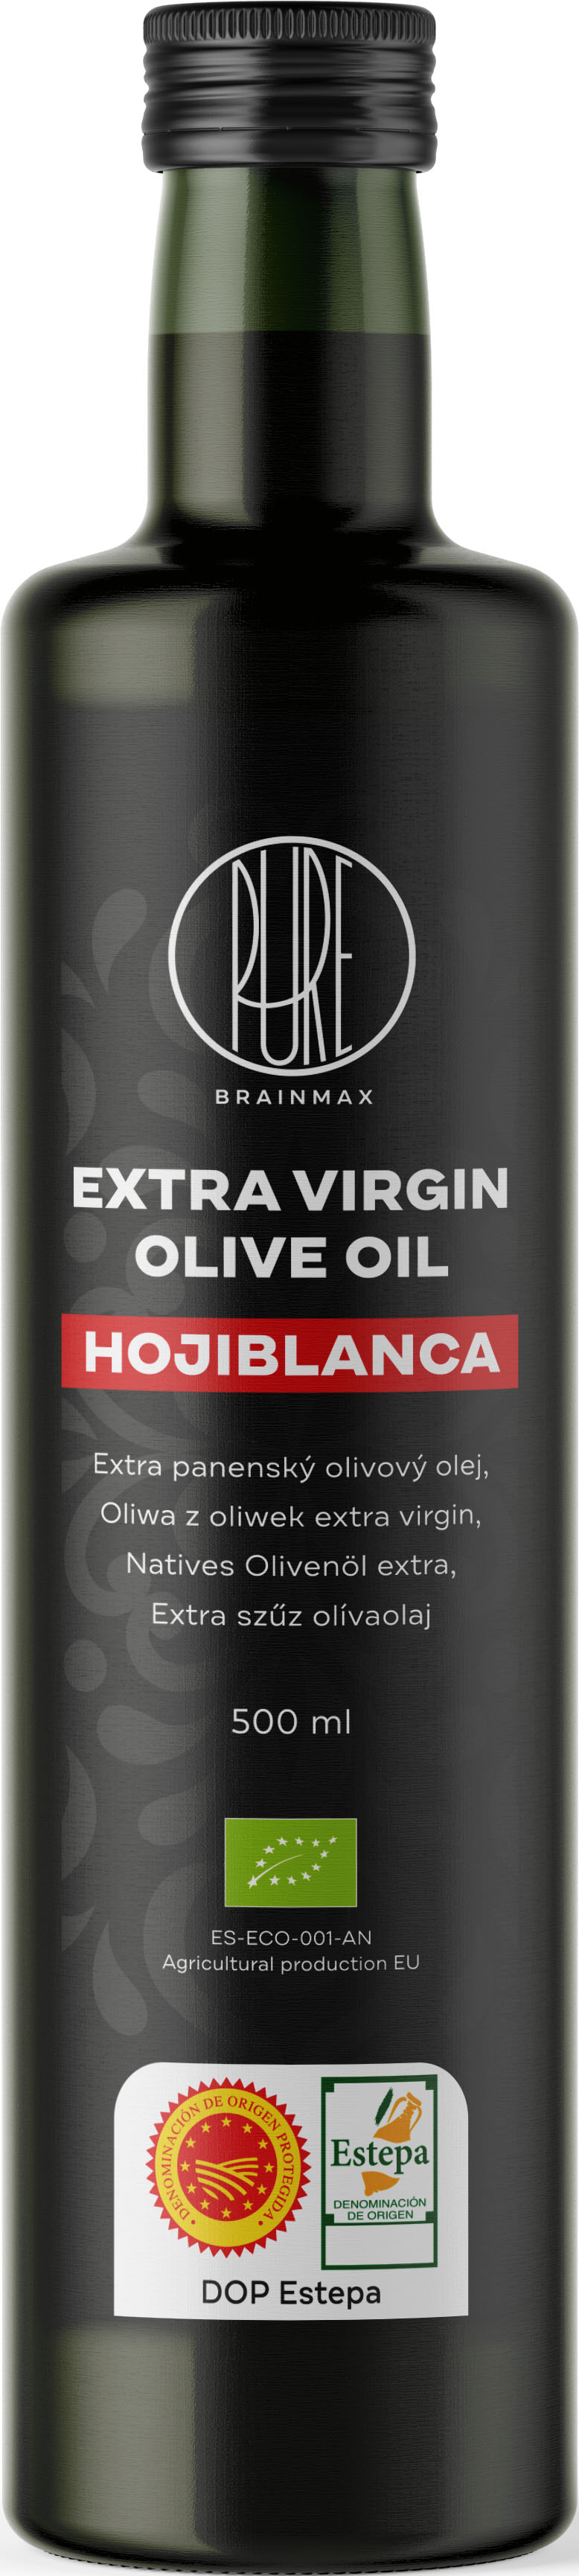 BrainMax Pure Extra panenský olivový olej Hojiblanca, BIO, 500 ml Španělský extra panenský olivový olej // * ES-ECO-001-AN certifikát